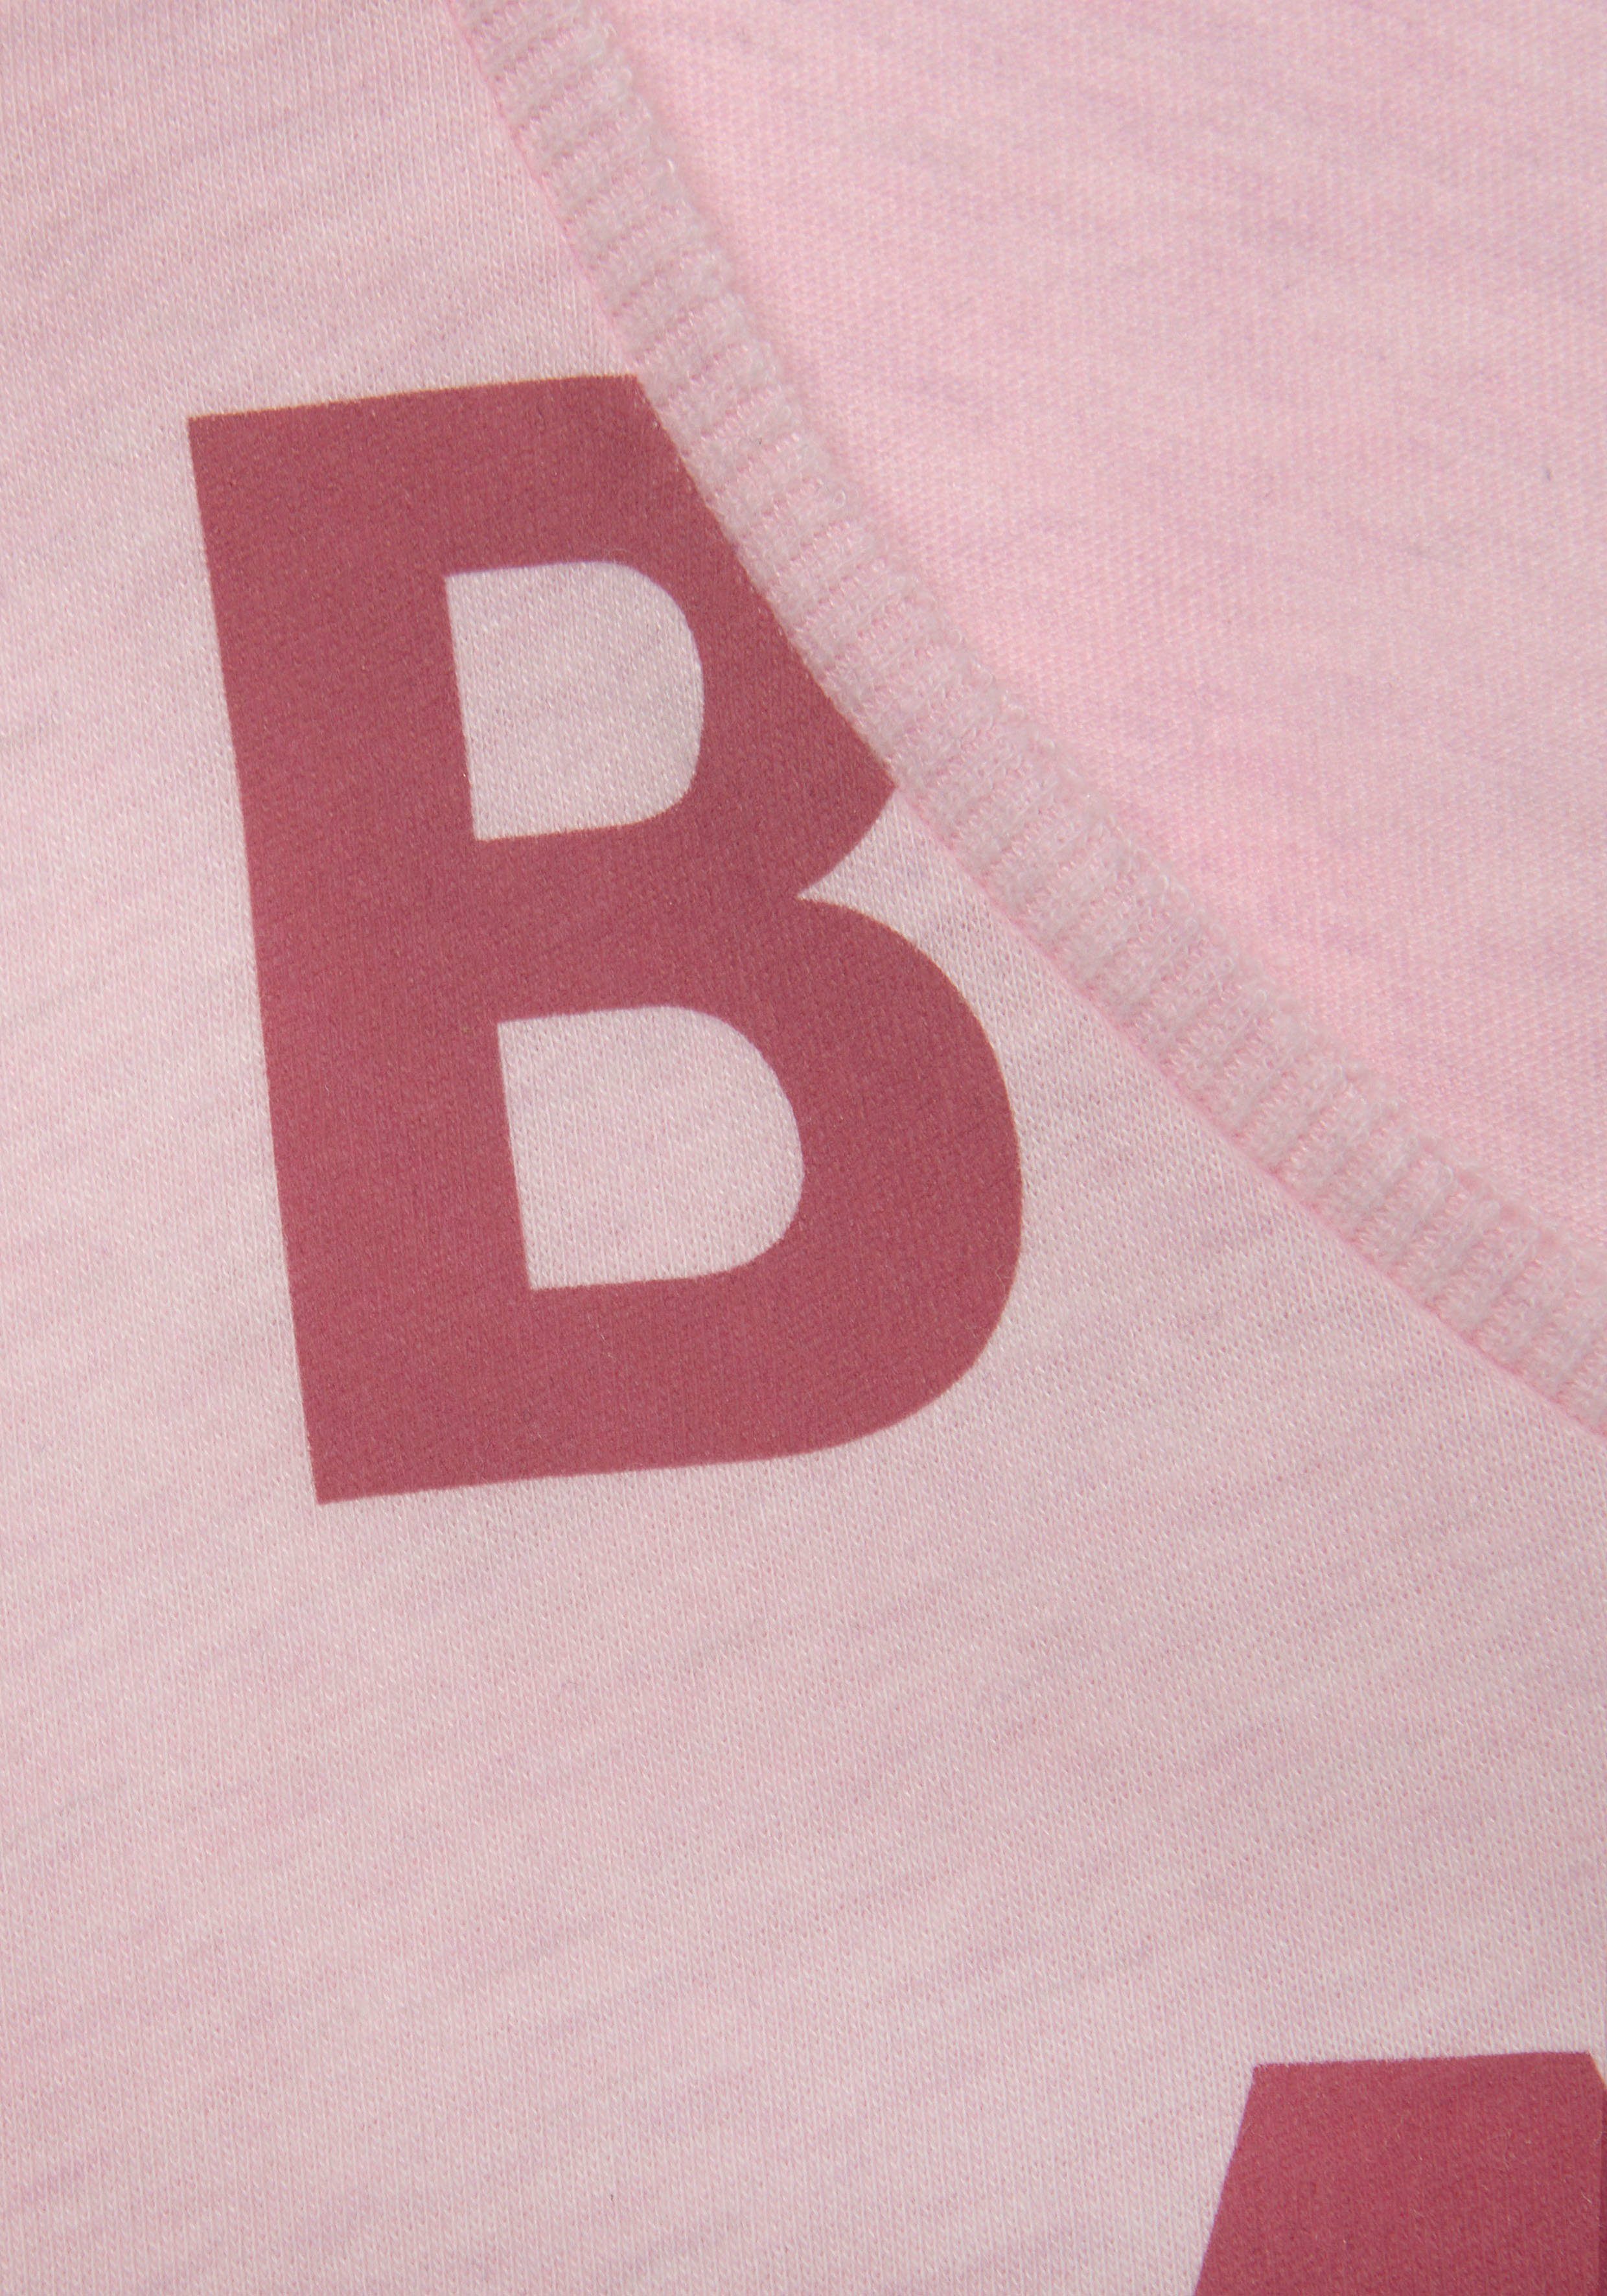 Elbsand weichem rosa T-Shirt und Kurzarmshirt, Jersey, aus bequem sportlich